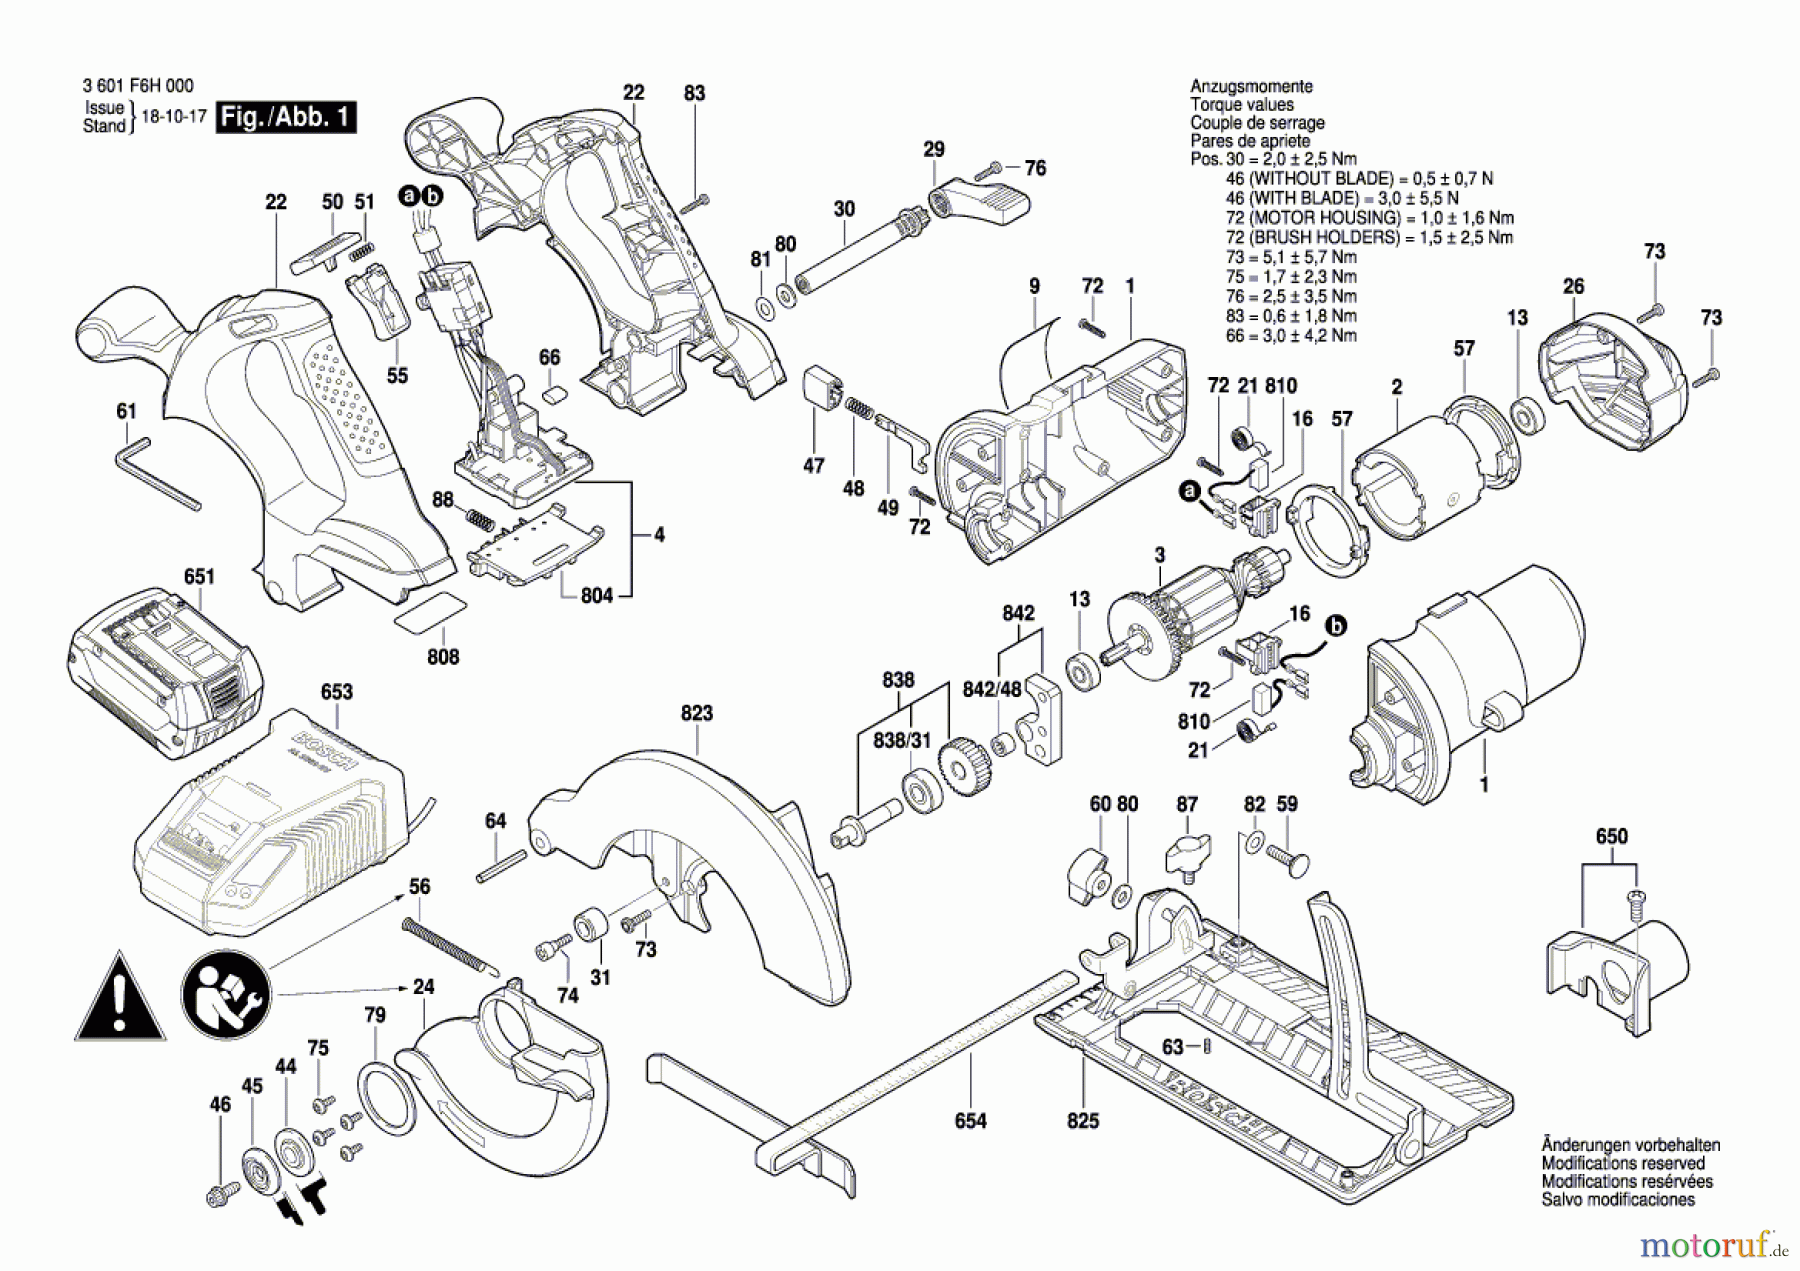  Bosch Akku Werkzeug Akku-Kreissäge GKS 18 V-LI Seite 1